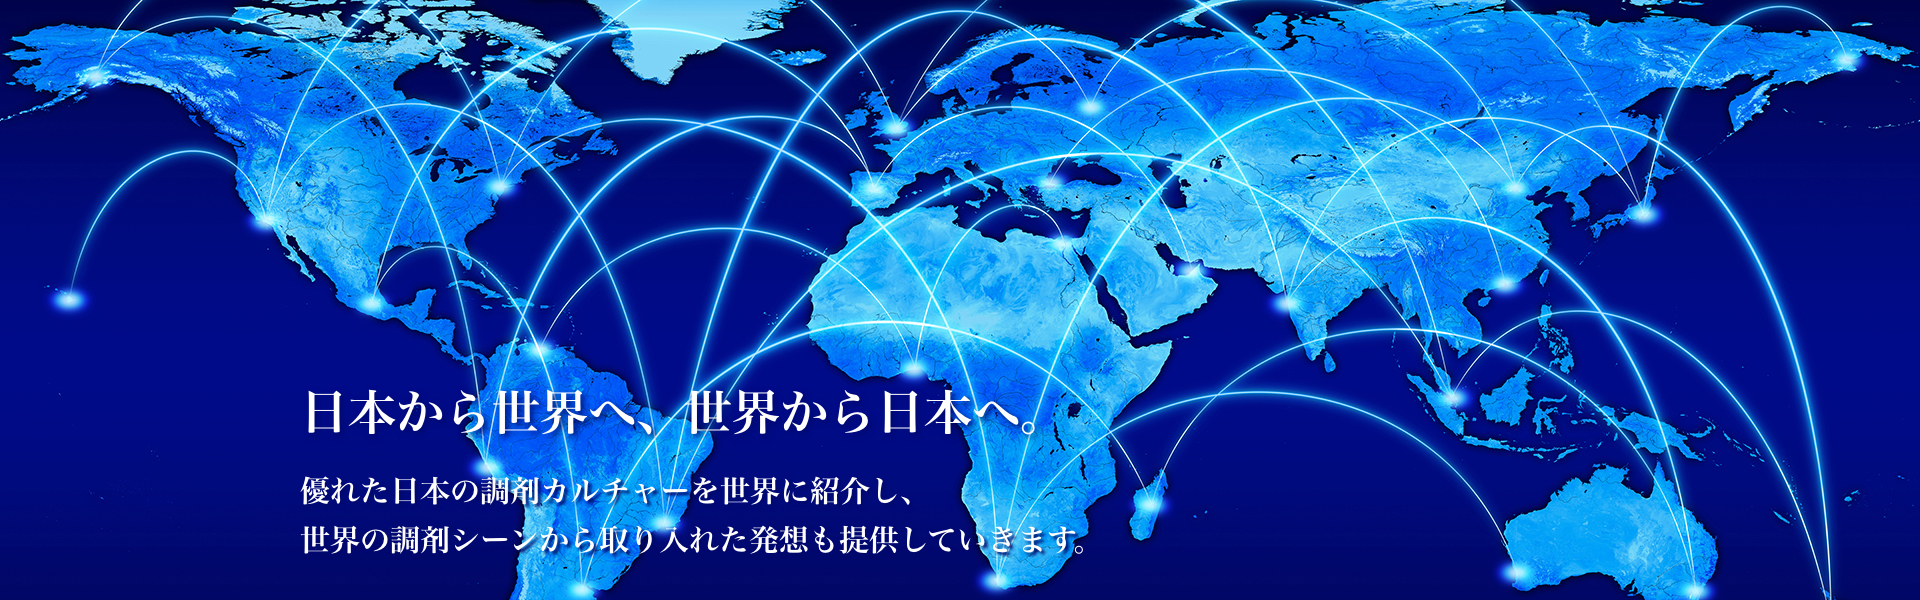 日本から世界へ、世界から日本へ。